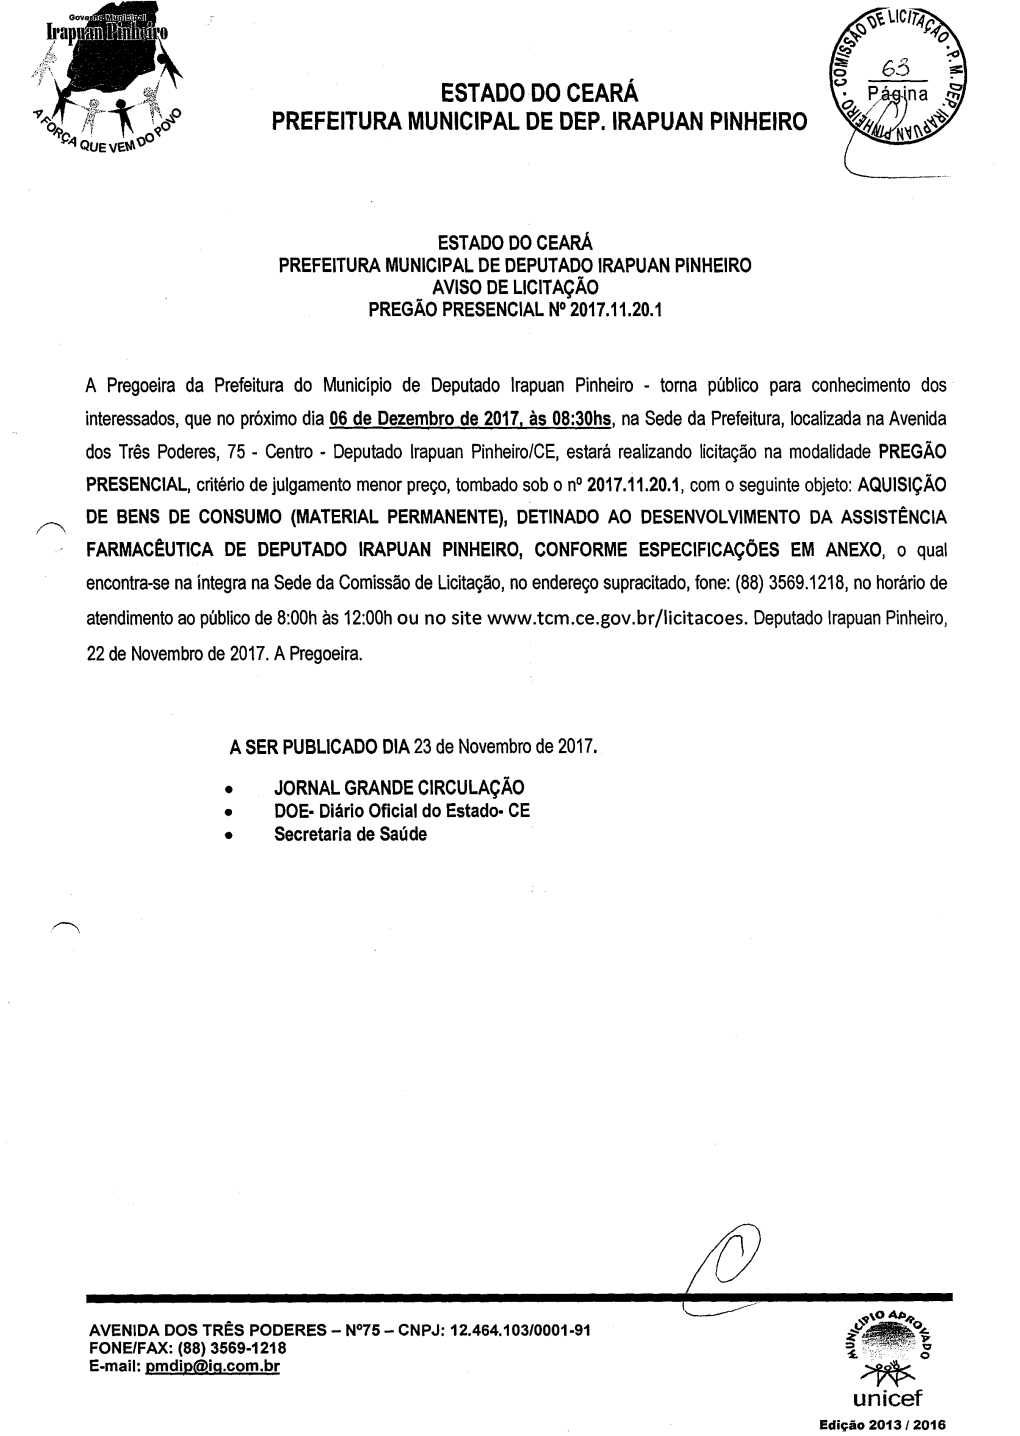 Estado Do Ceará Prefeitura Municipal De Deputado Irapuan Pinheiro Aviso De Licitação Pregão Presencial N°2017.11.20.1